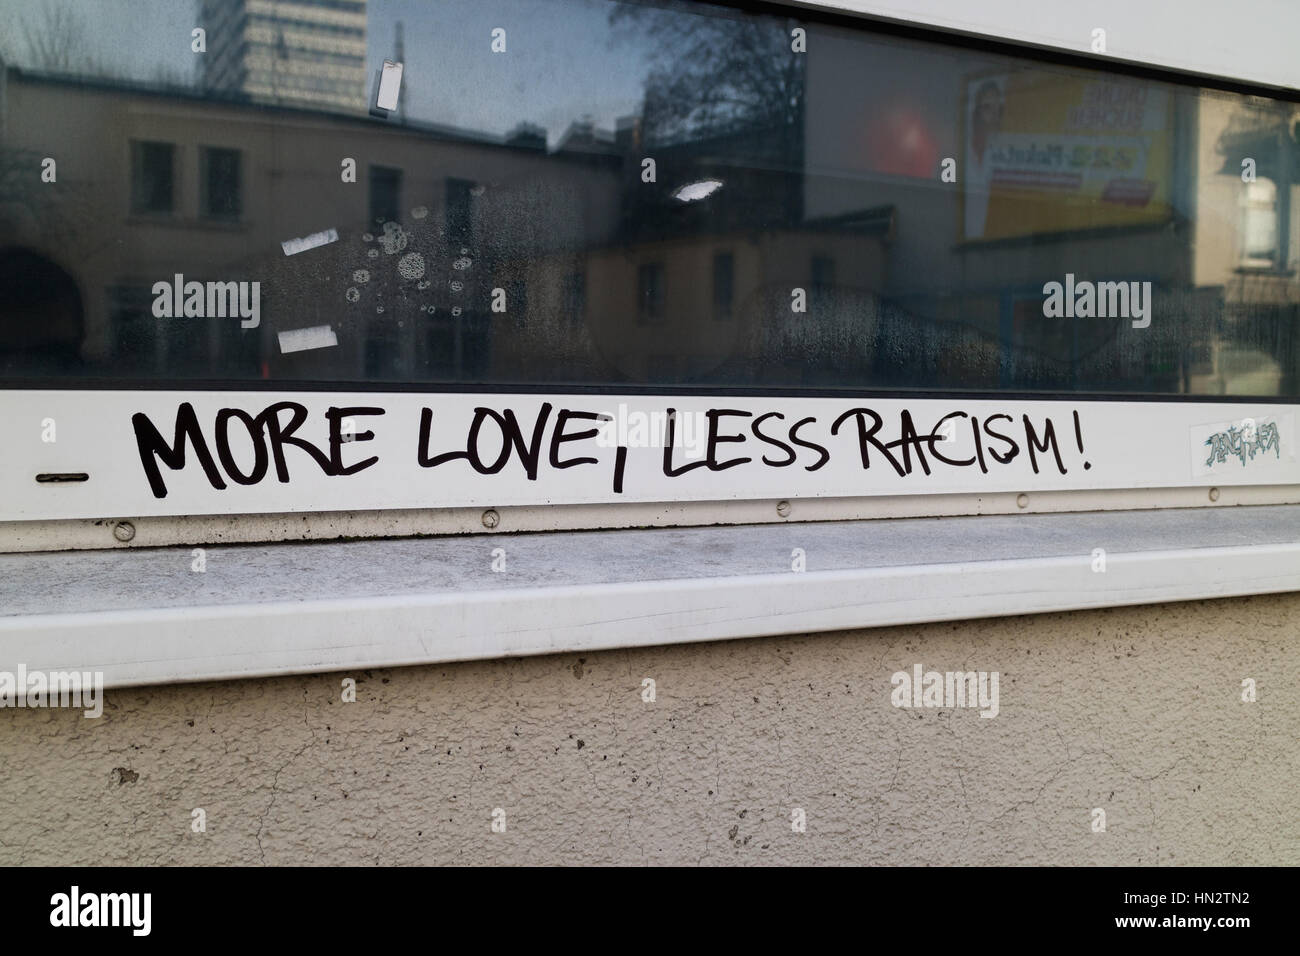 Des graffitis sur un immeuble en dit plus l'amour, moins de racisme Banque D'Images